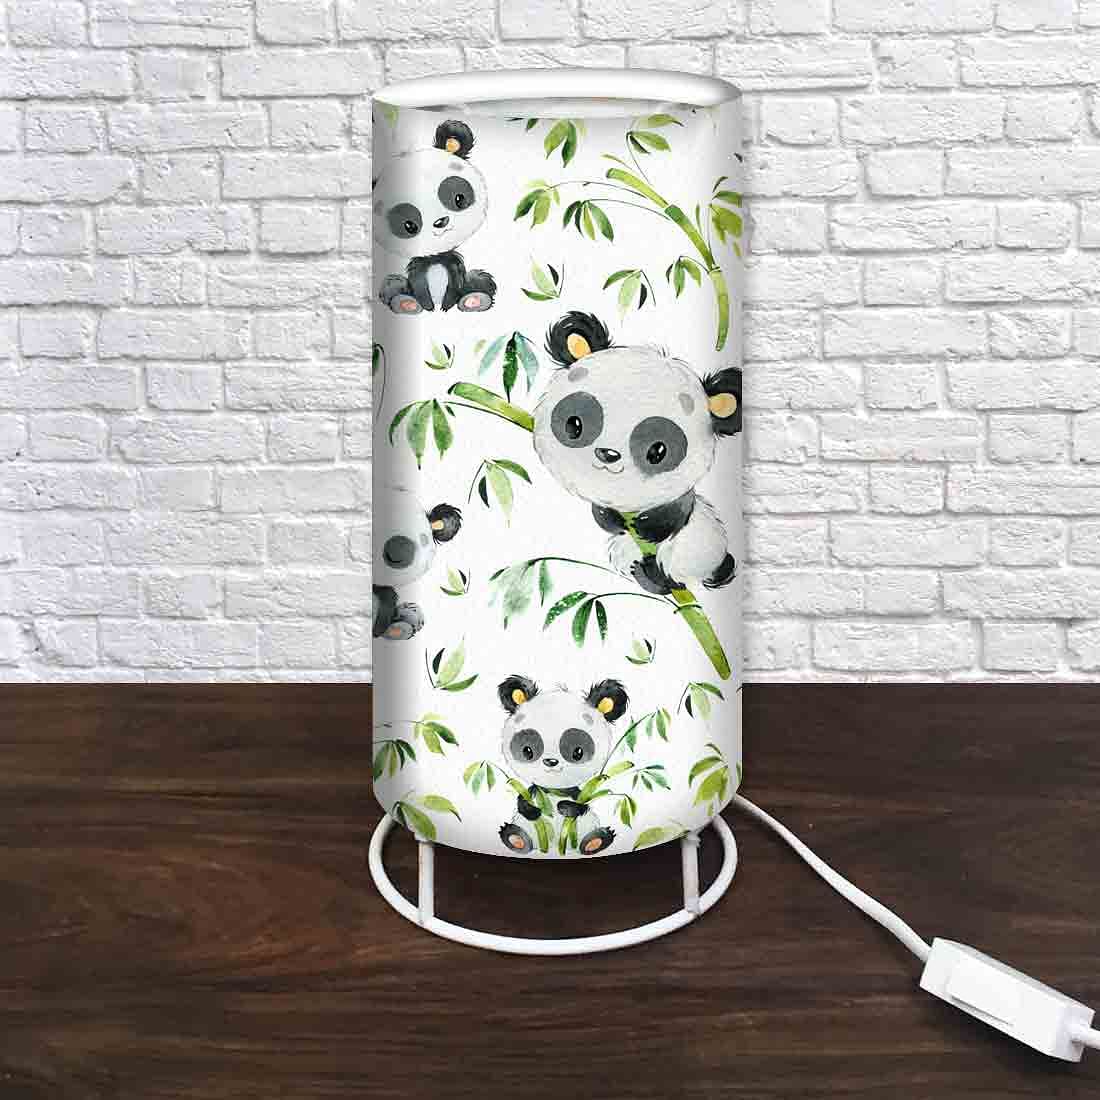 Nutcase Designer Table Floor Lamp for Living Drawing Room Bedroom - Cute Panda Nutcase